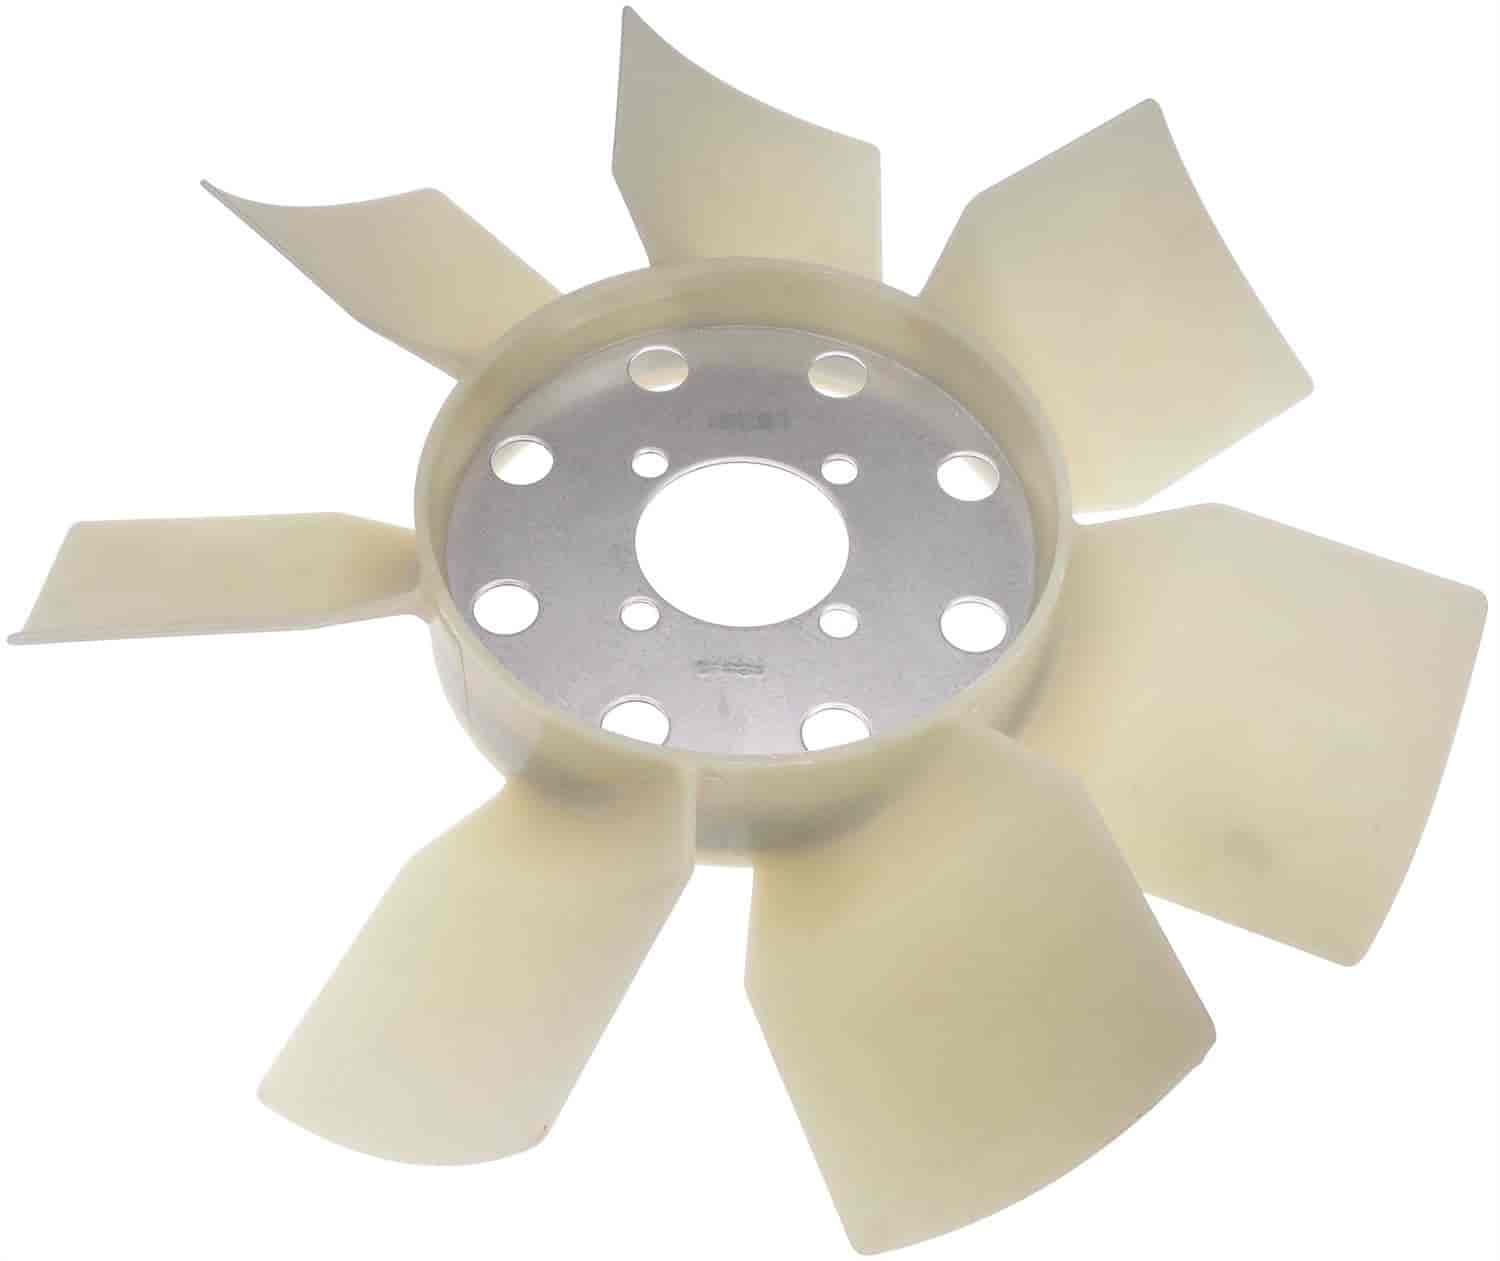 Plastic Clutch Fan Blade